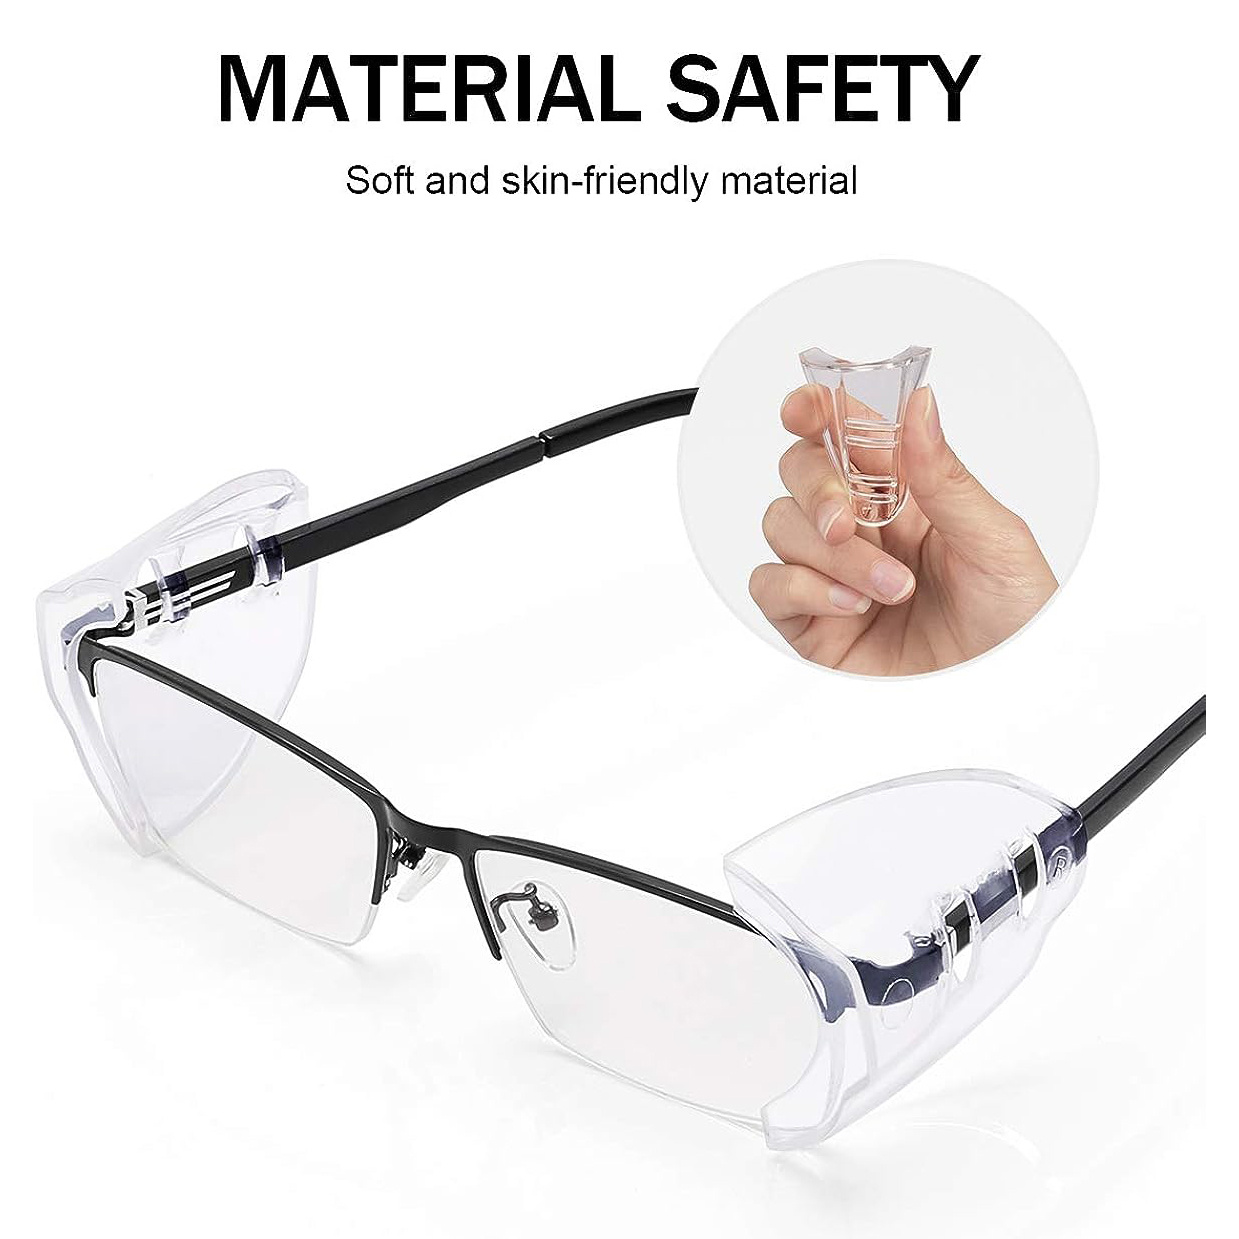 Gafas protectoras de seguridad para el trabajo, lentes industriales  antisalpicaduras, a prueba de viento y polvo, para laboratorio, pintura